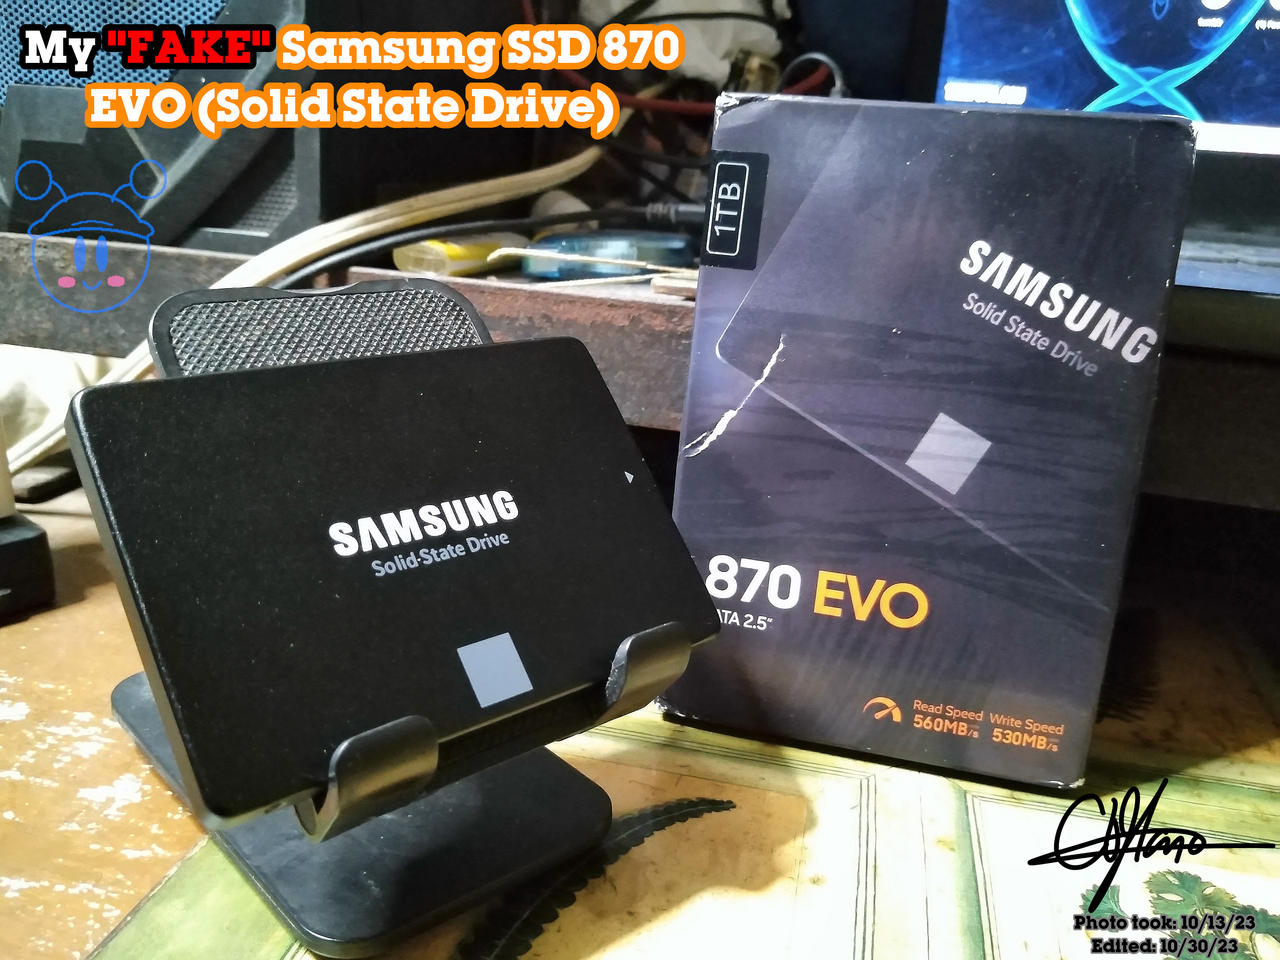 My FAKE Samsung SSD 870 EVO by murumokirby360 on DeviantArt